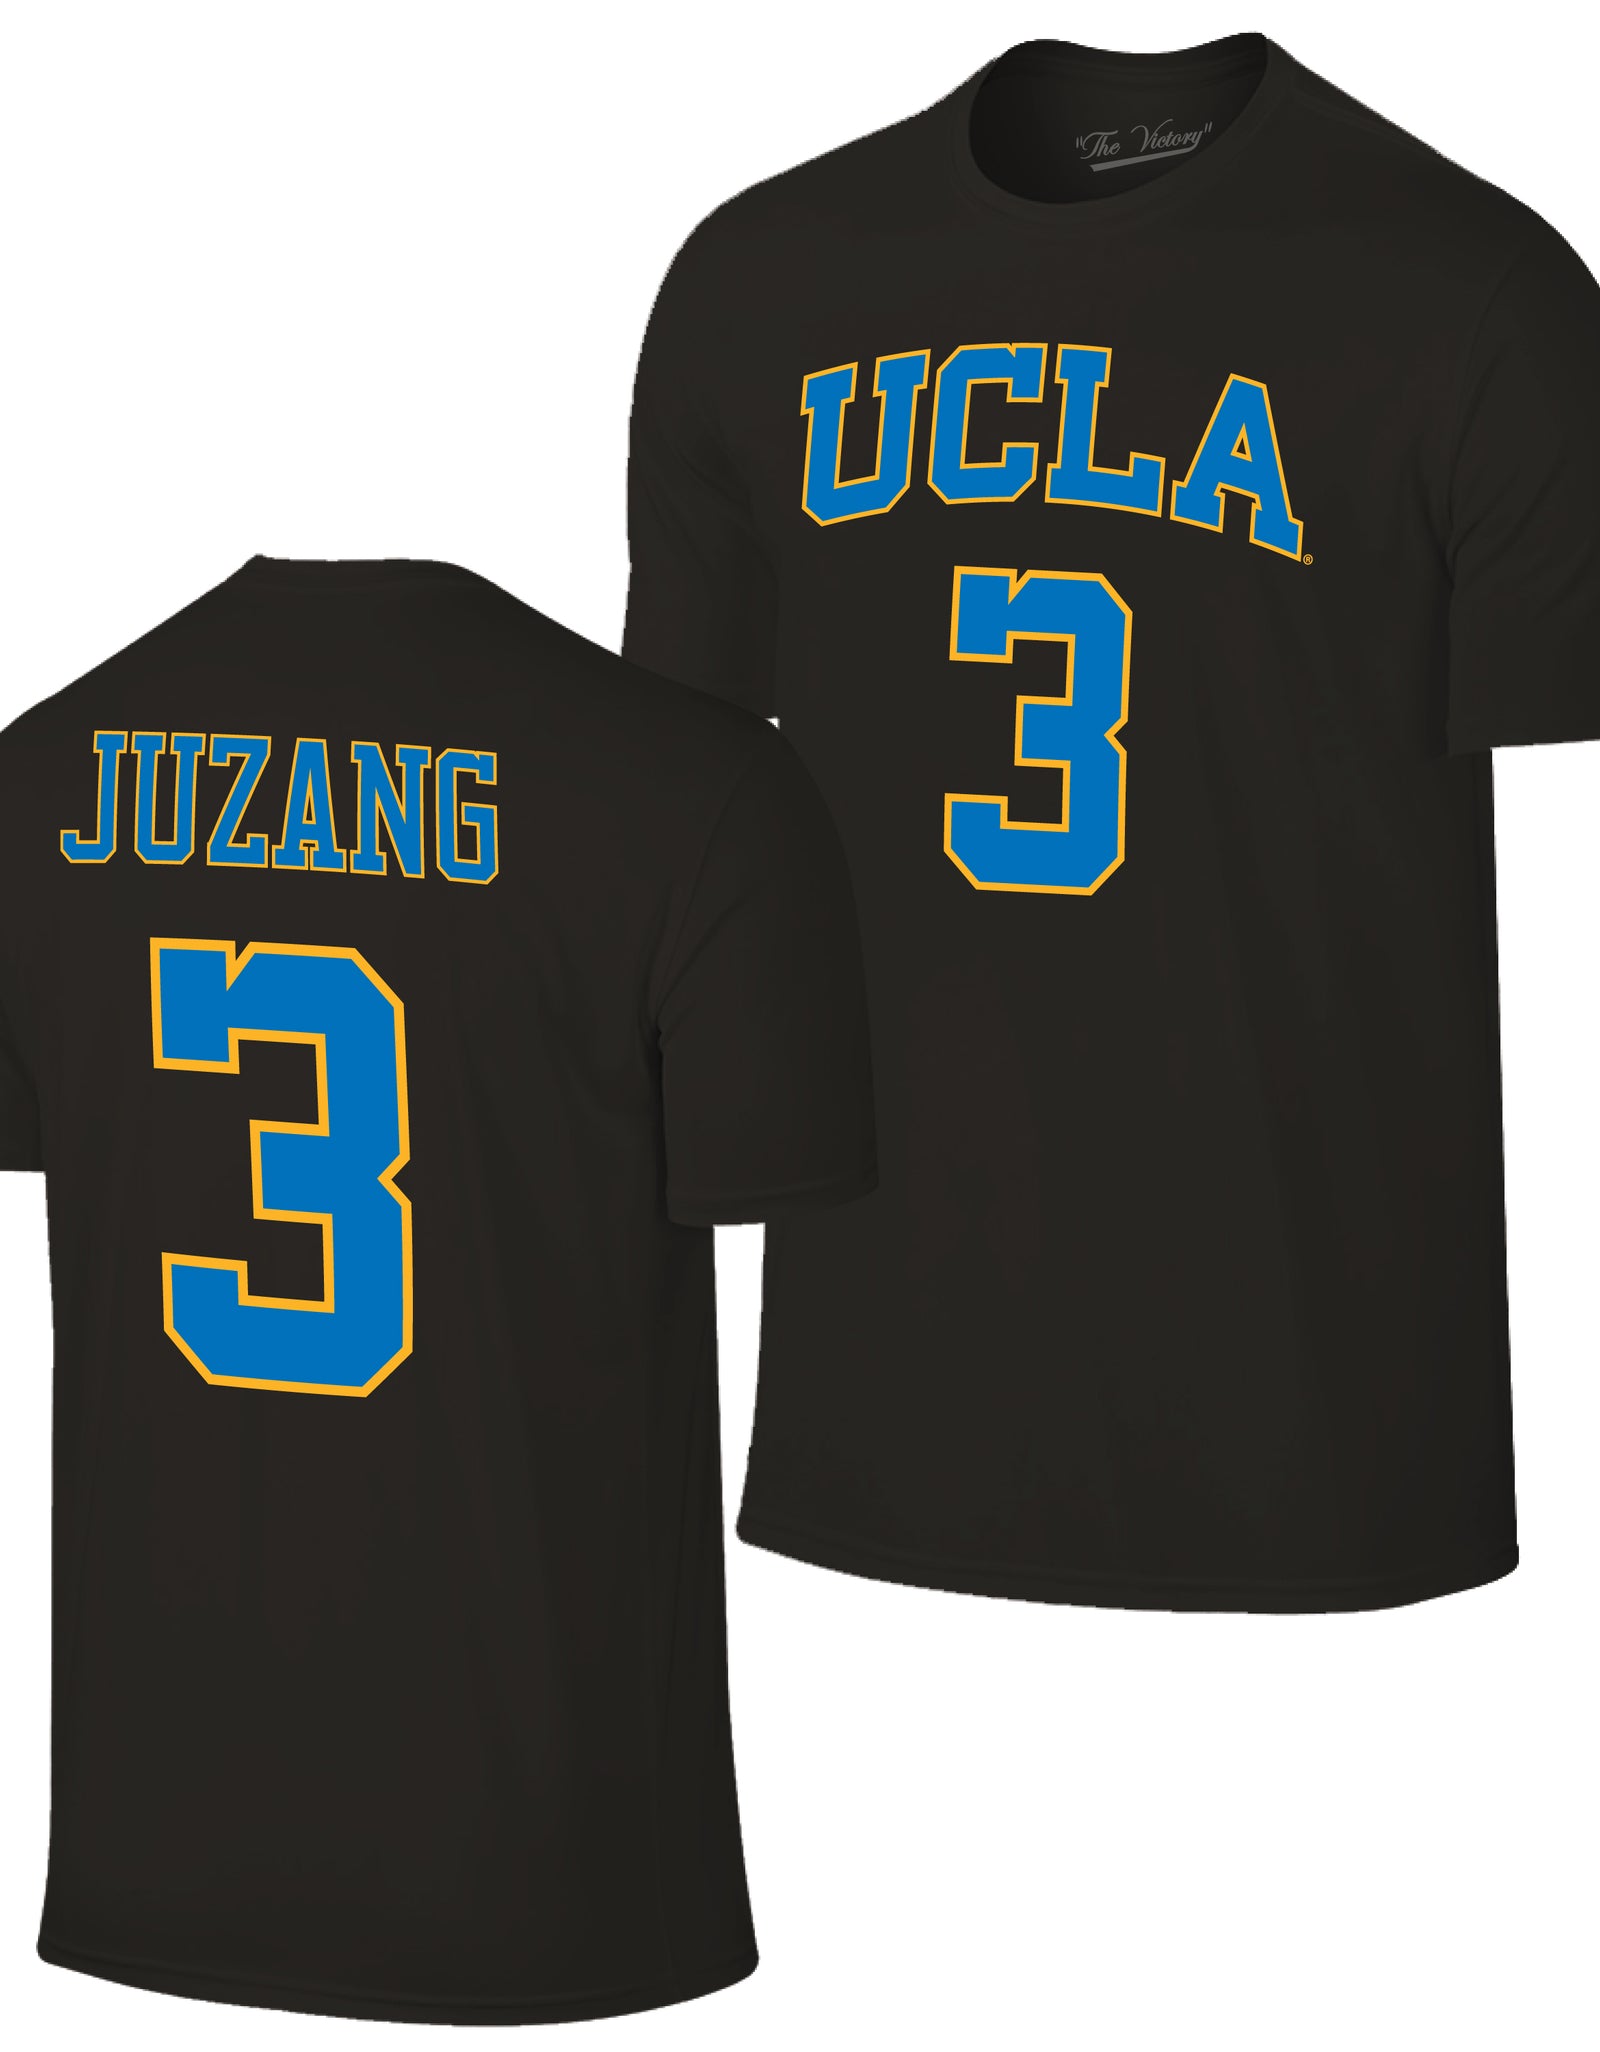 Johnny Juzang, UCLA, Small Forward